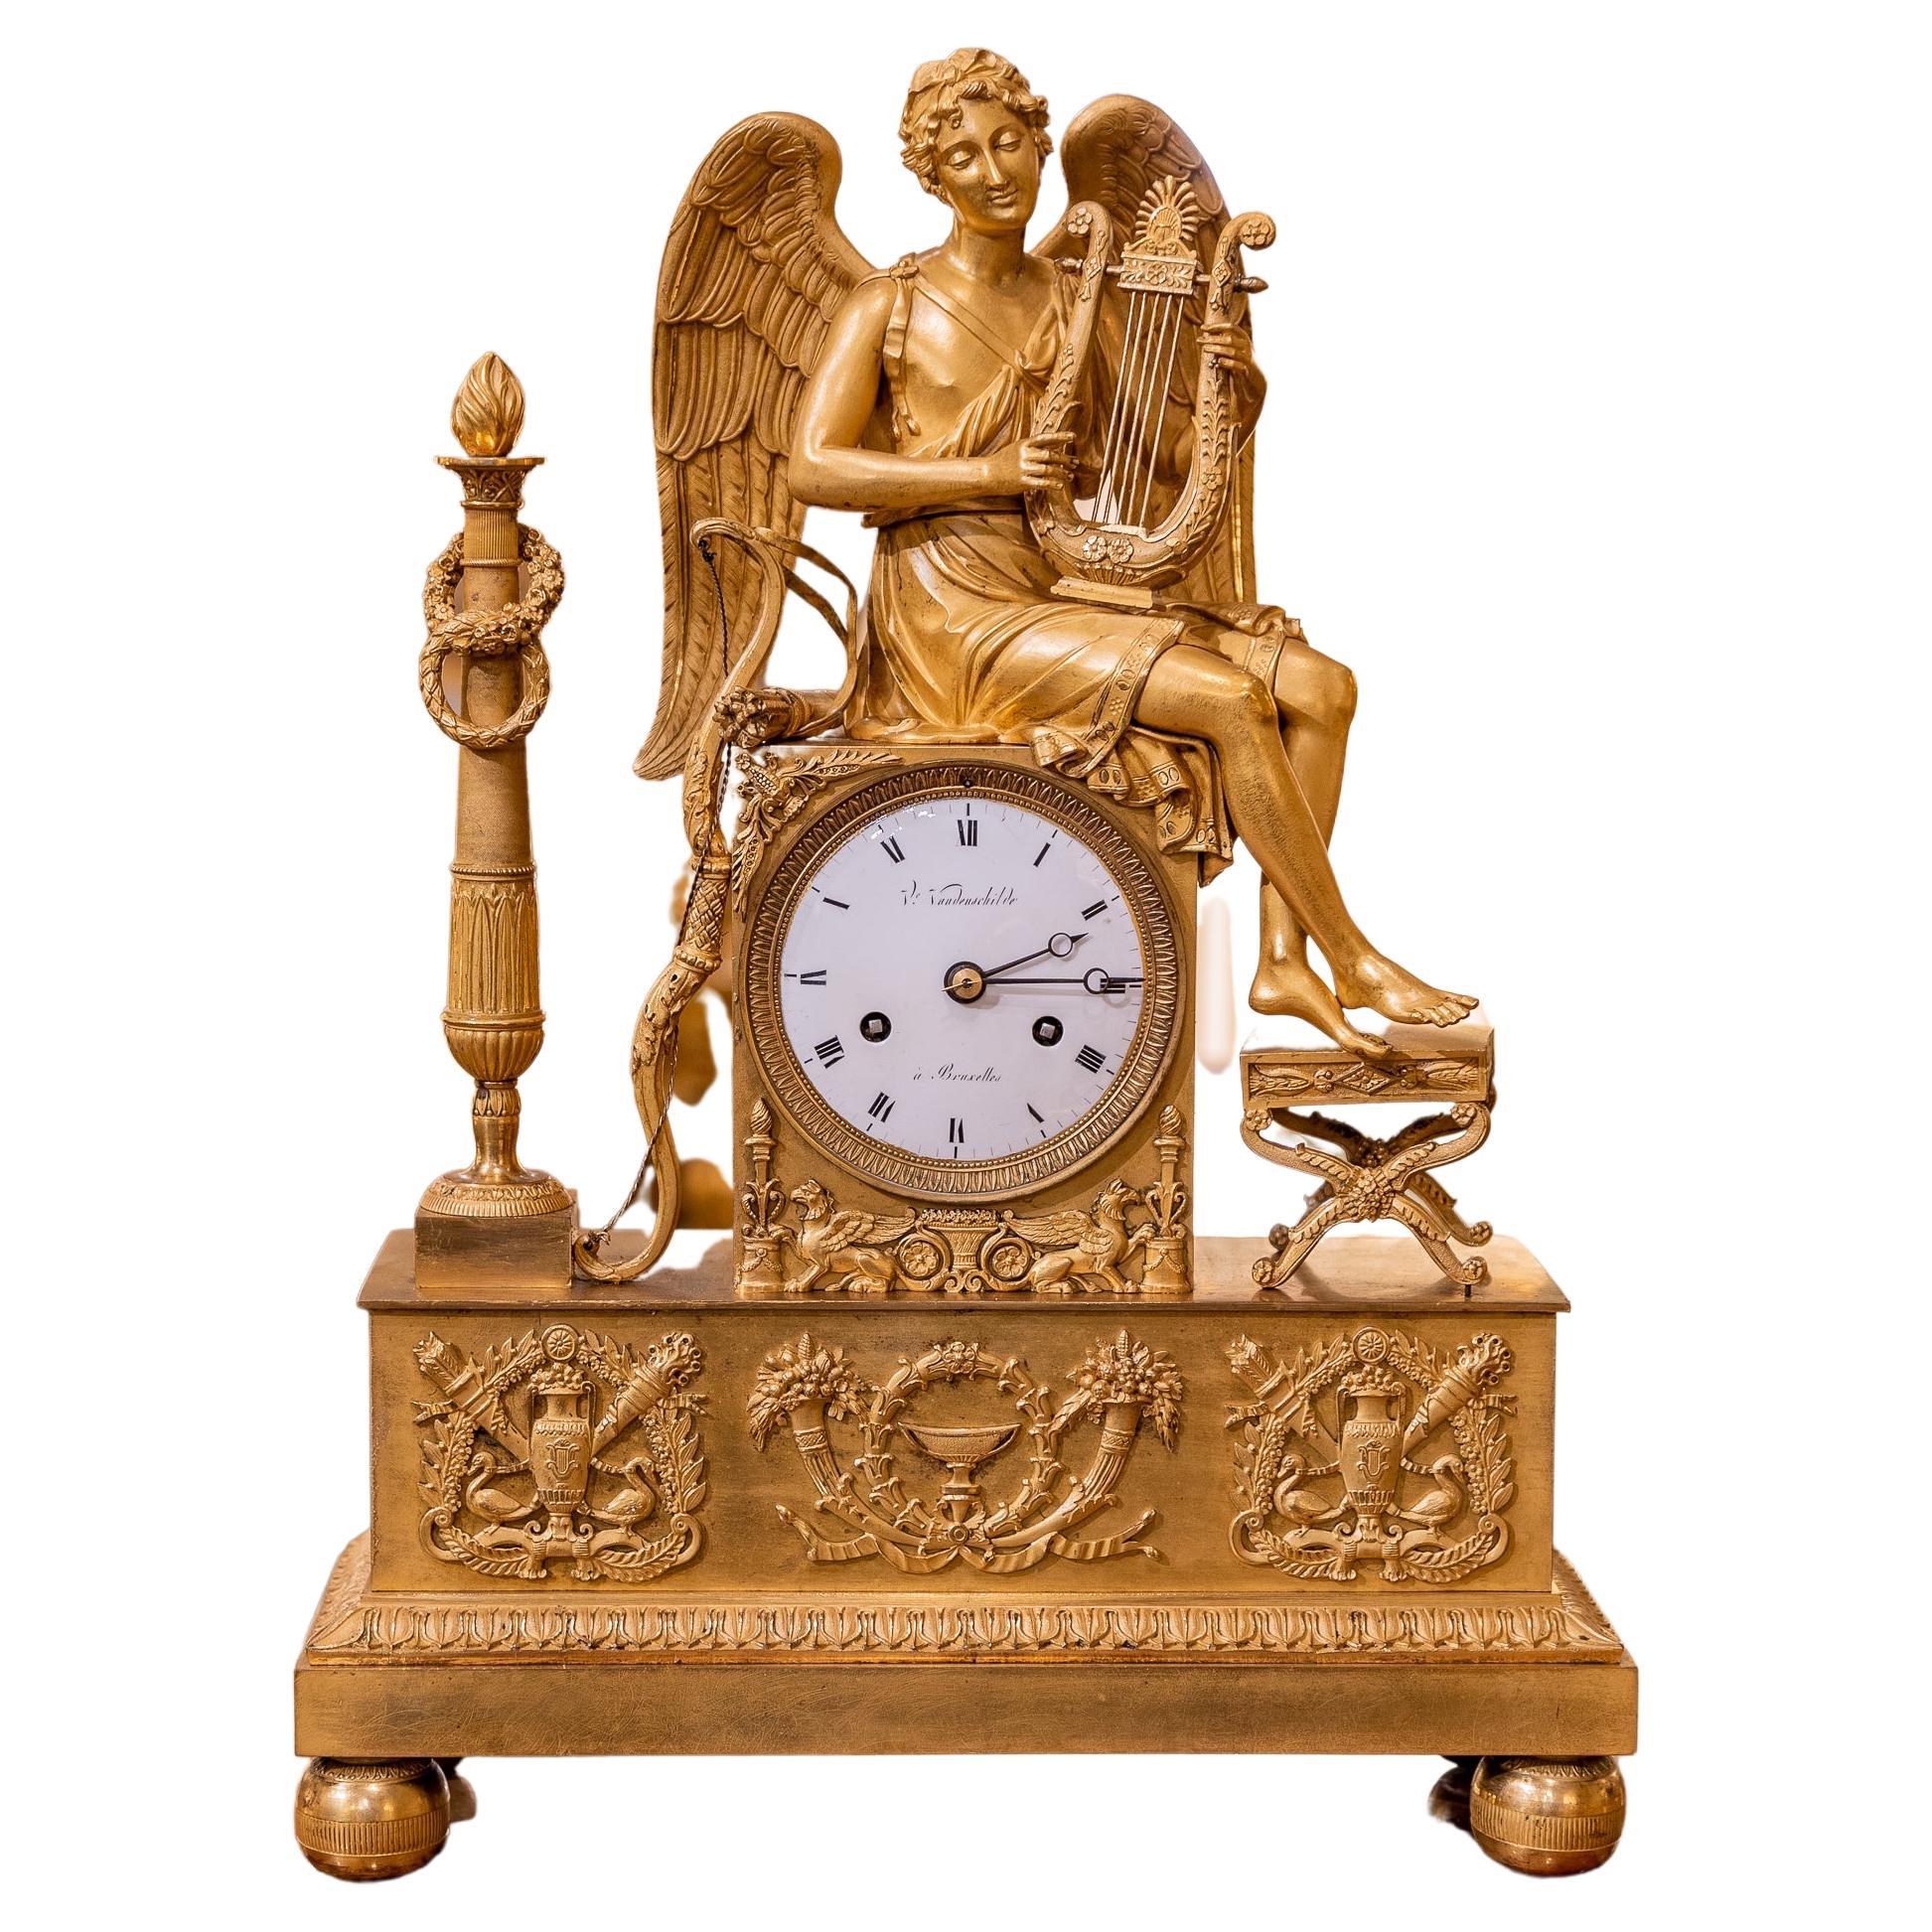 ry fine horloge en bronze doré de la fin du XVIIIe siècle de l'Empire français. Signé 